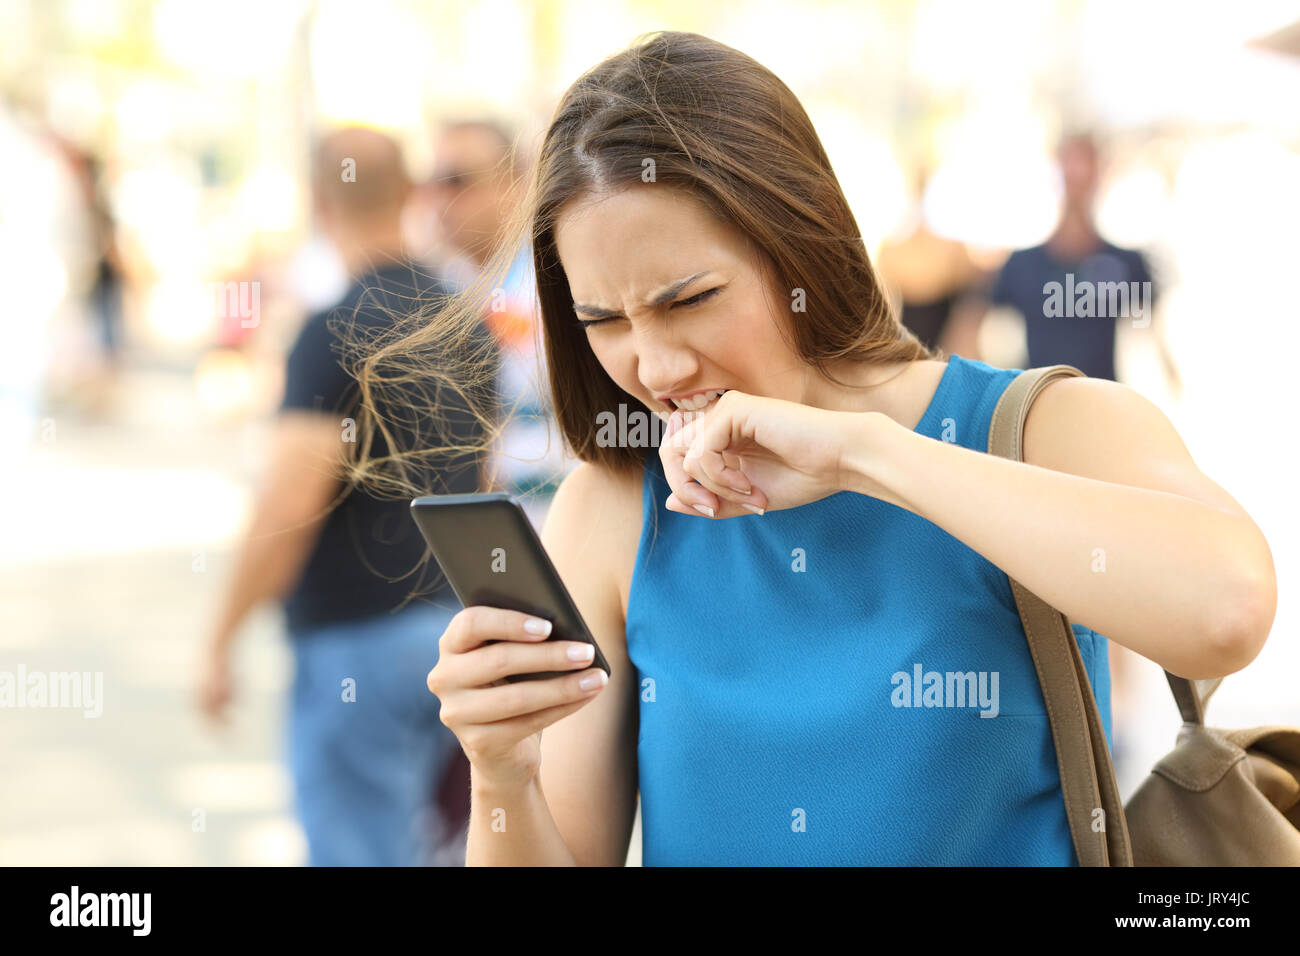 Arrabbiato donna stufi del suo cellulare sulla strada Foto Stock